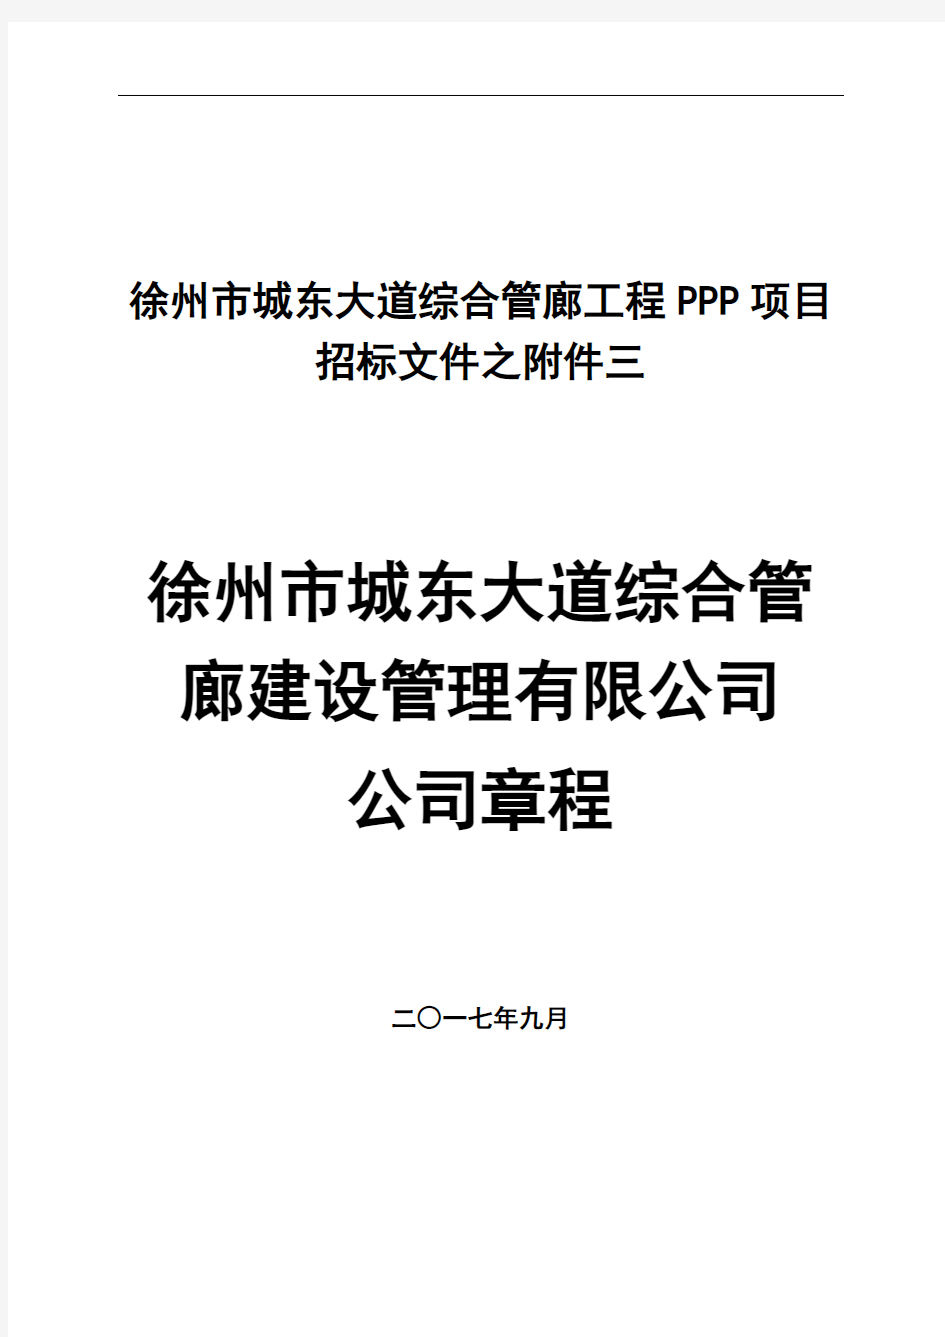 徐州市城东大道综合管廊工程PPP项目招标文件之附件三